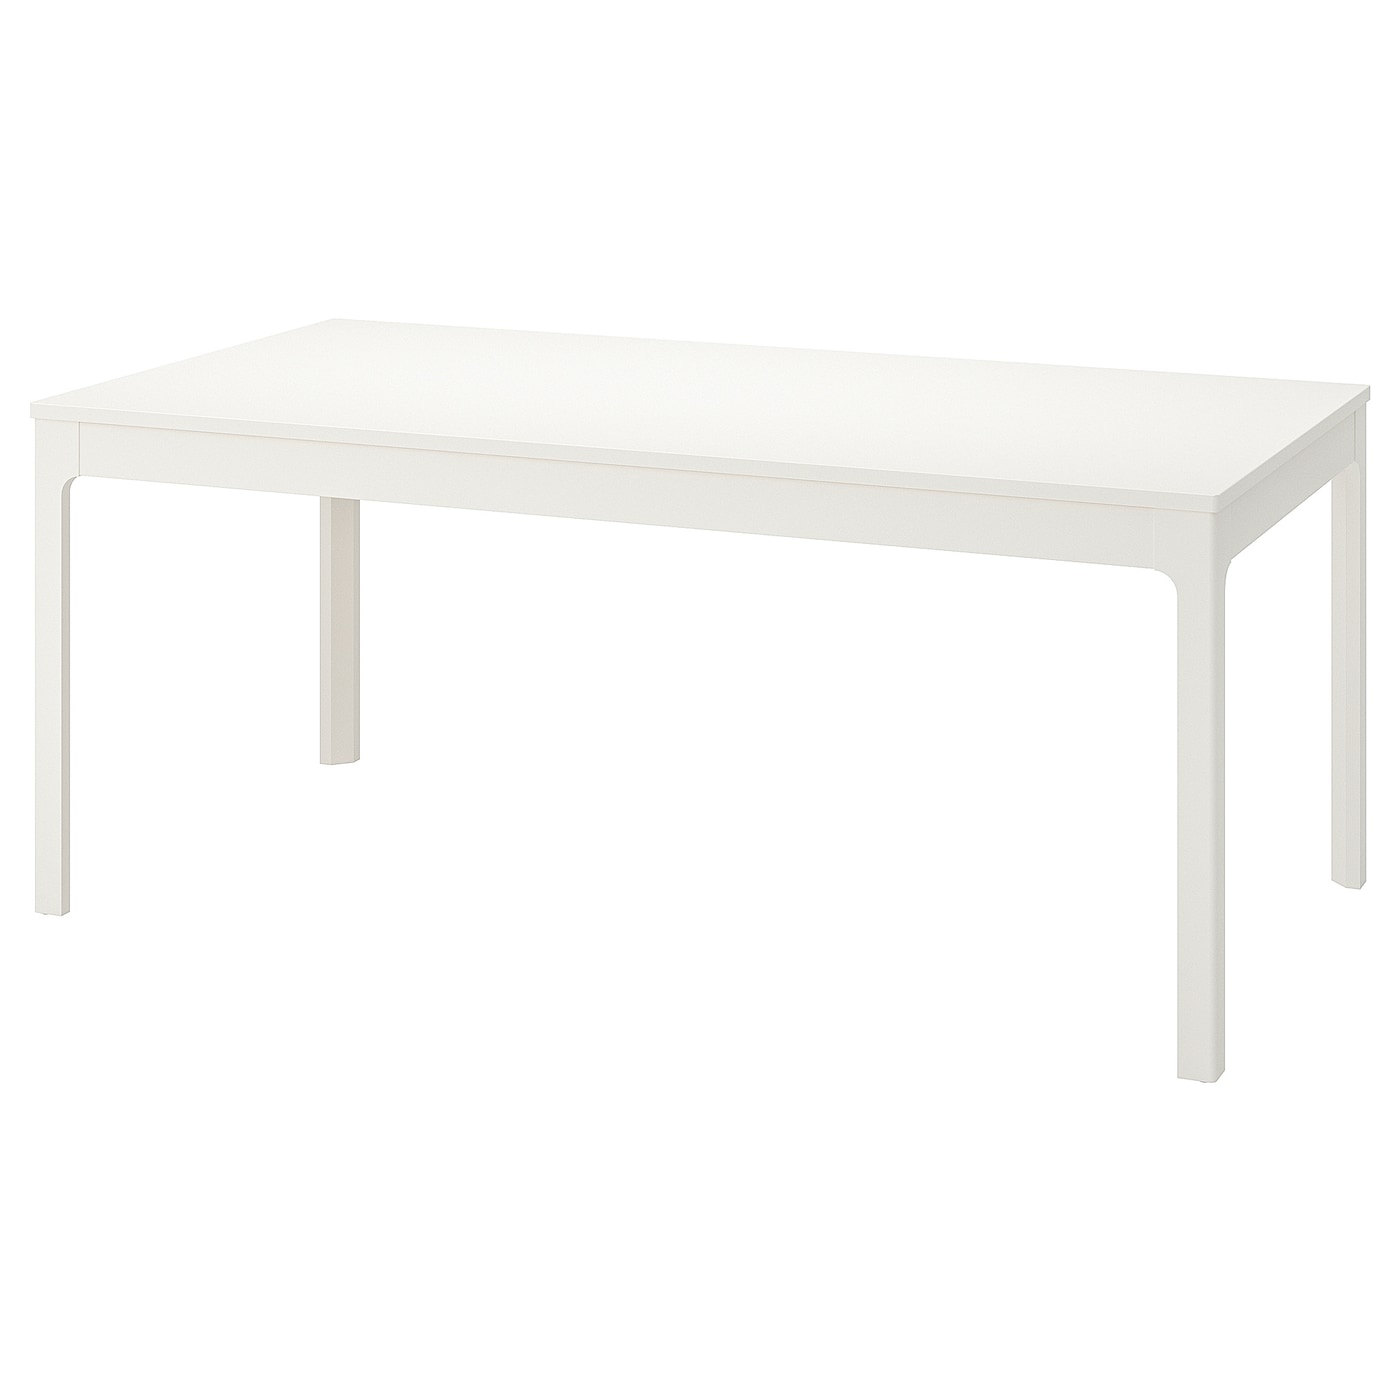 Раздвижной обеденный стол - IKEA EKEDALEN, 180/240х90 см, белый, ЭКЕДАЛЕН ИКЕА